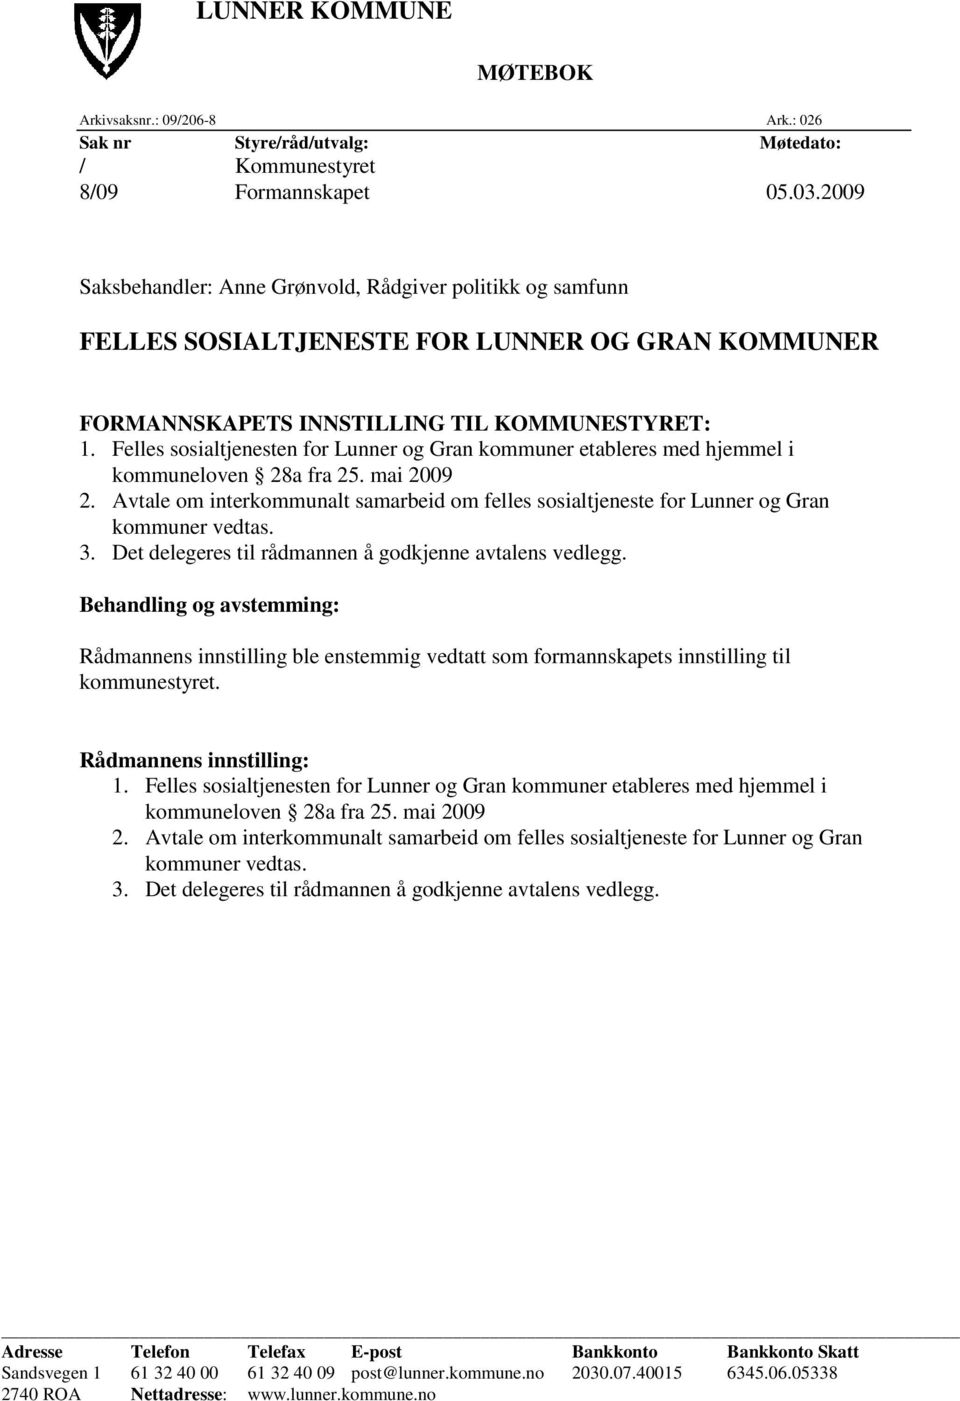 Felles sosialtjenesten for Lunner og Gran kommuner etableres med hjemmel i kommuneloven 28a fra 25. mai 2009 2.